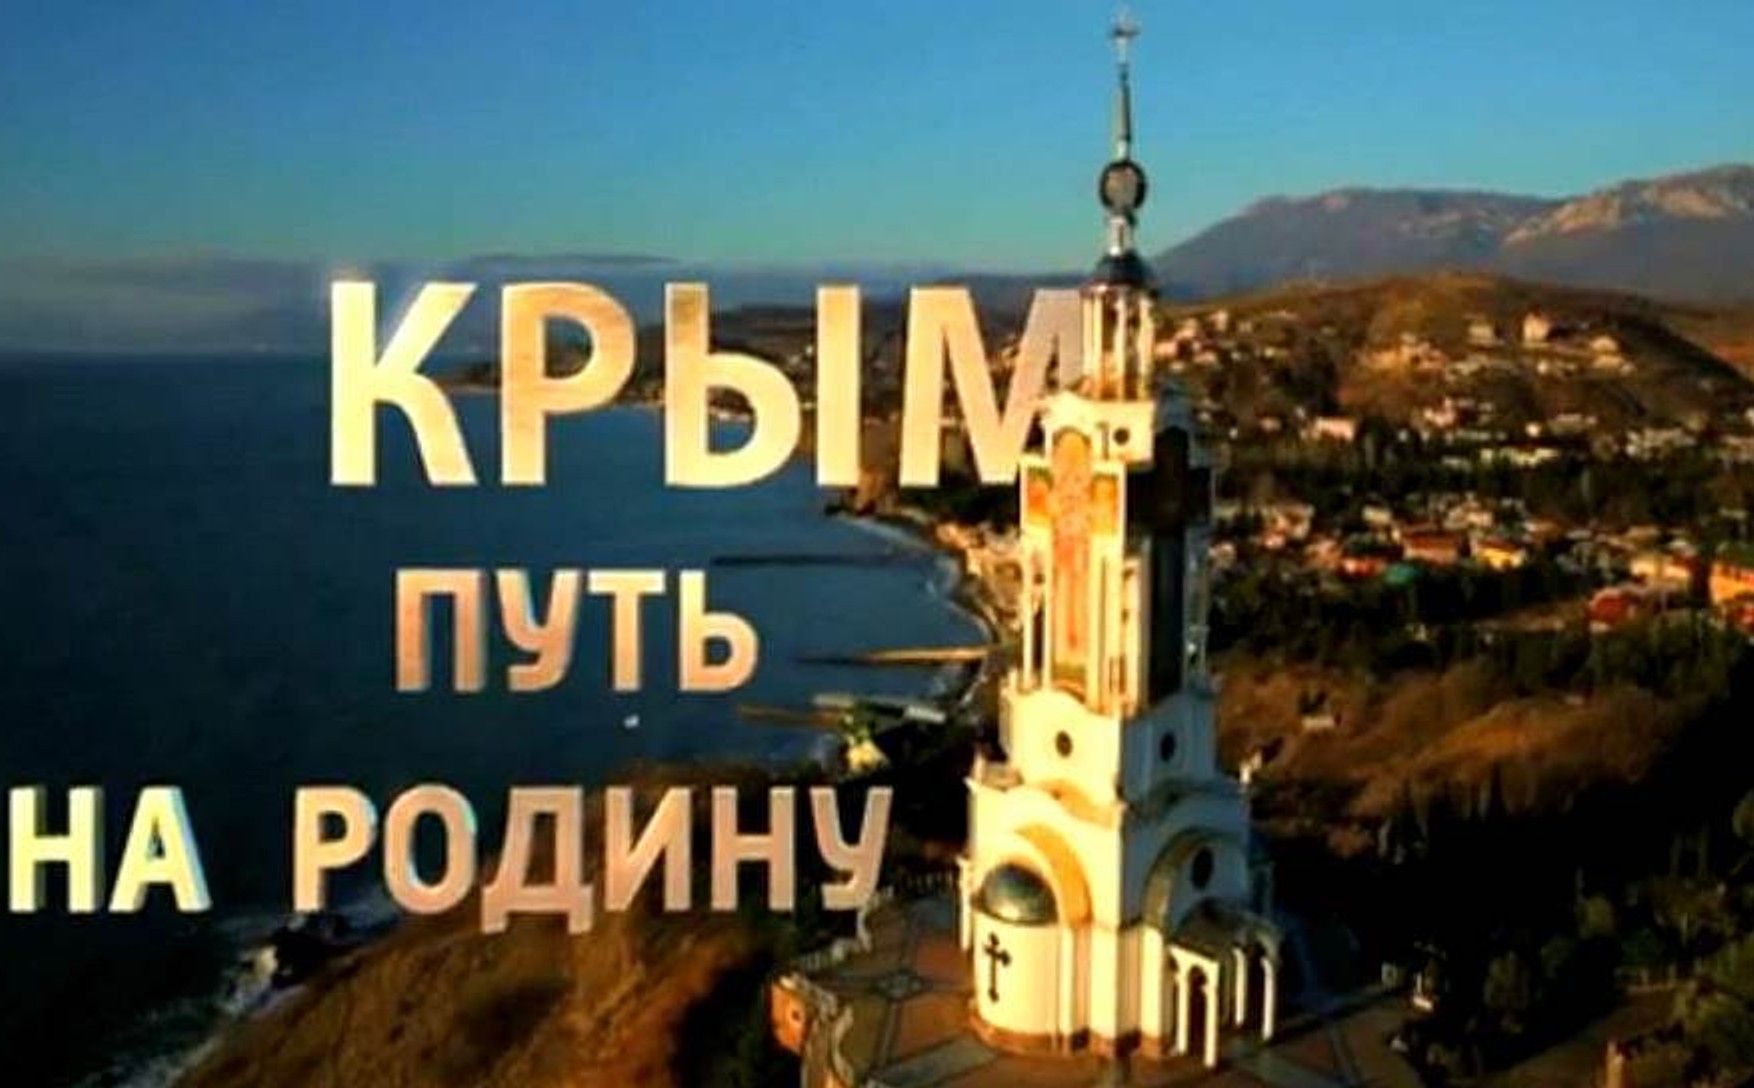 YouTube визнав фільм «Крим. Шлях на Батьківщину »« страшним або шокуючим »